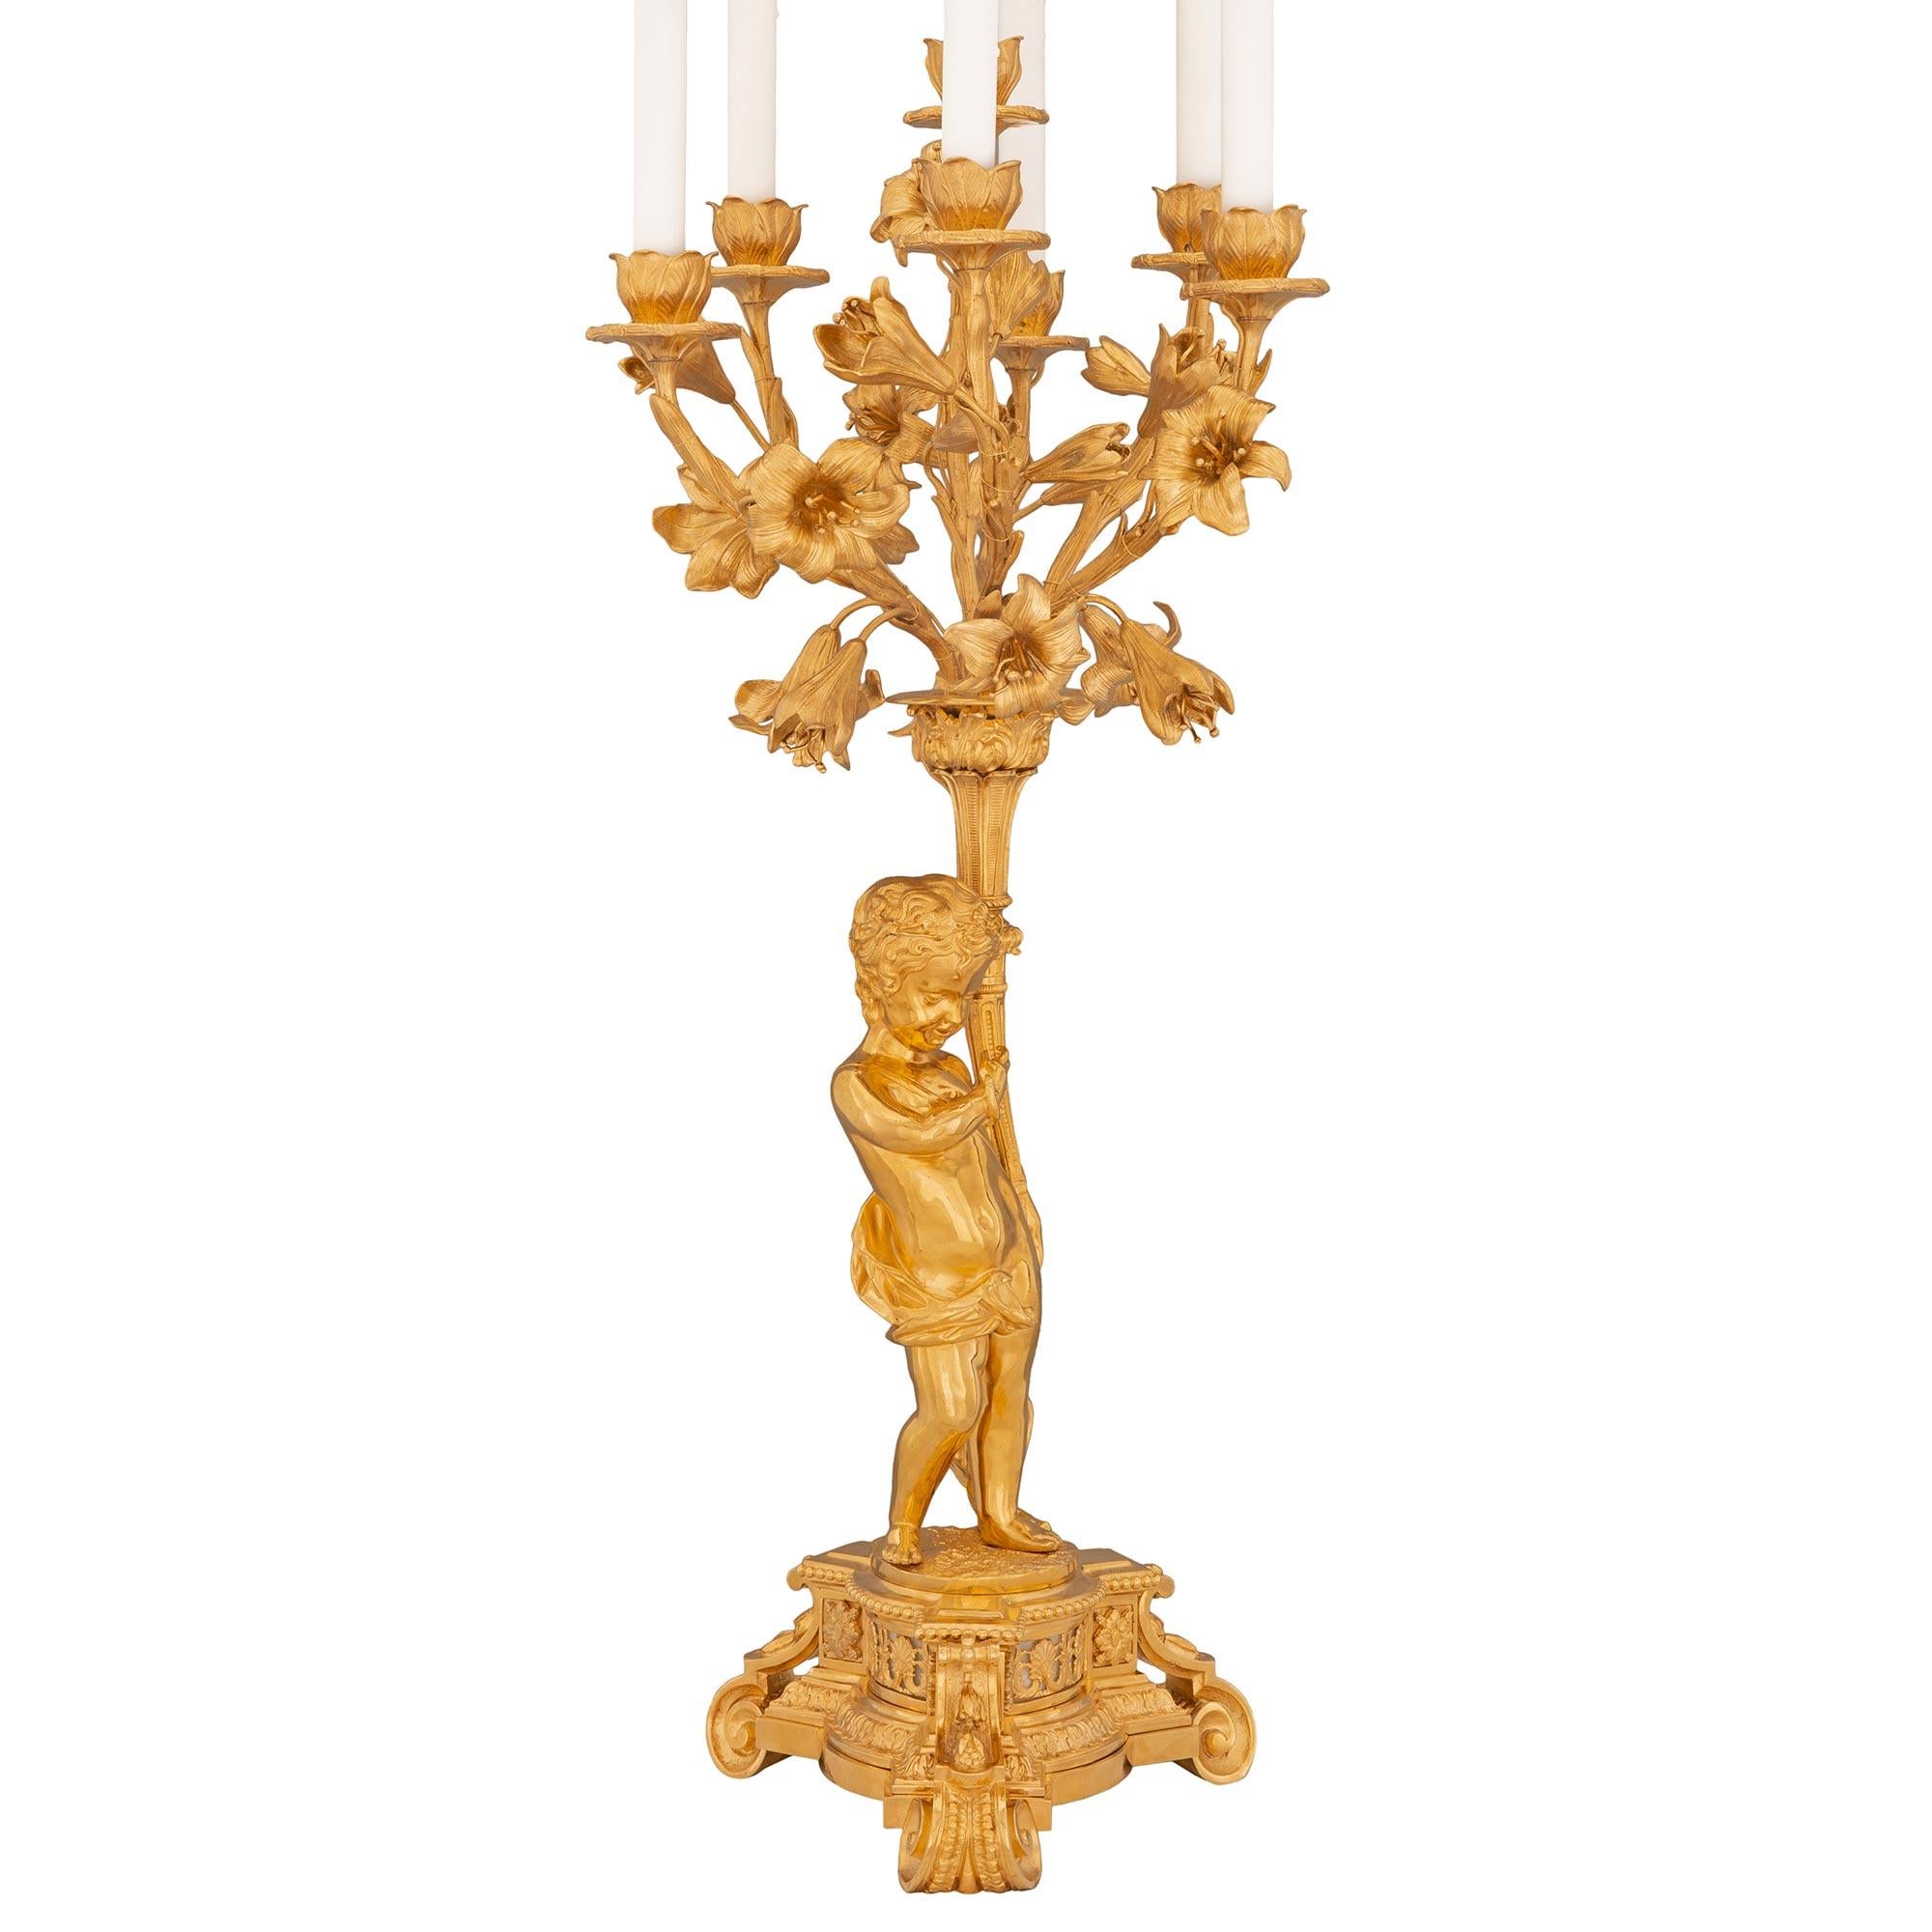 Paire de lampes candélabres en bronze doré d'époque Belle Époque et de style Louis XVI du XIXe siècle. Chaque lampe à sept bras repose sur une élégante base de forme triangulaire aux côtés concaves et aux angles coupés, qui présente de superbes